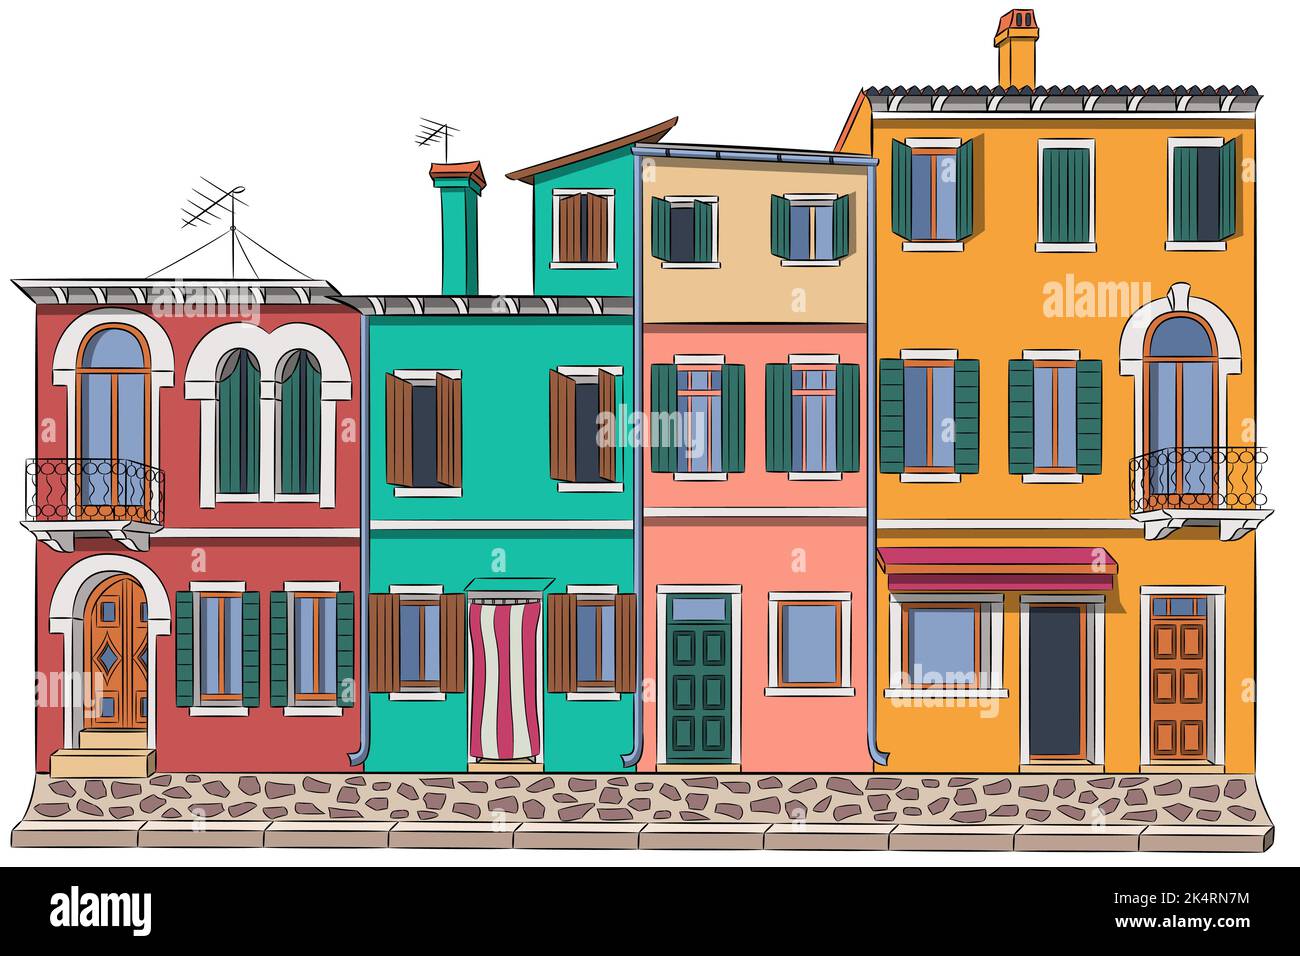 Bunte helle Fassaden von traditionellen kleinen Häusern auf der Insel Burano. Venedig. Italien. Stock Vektor